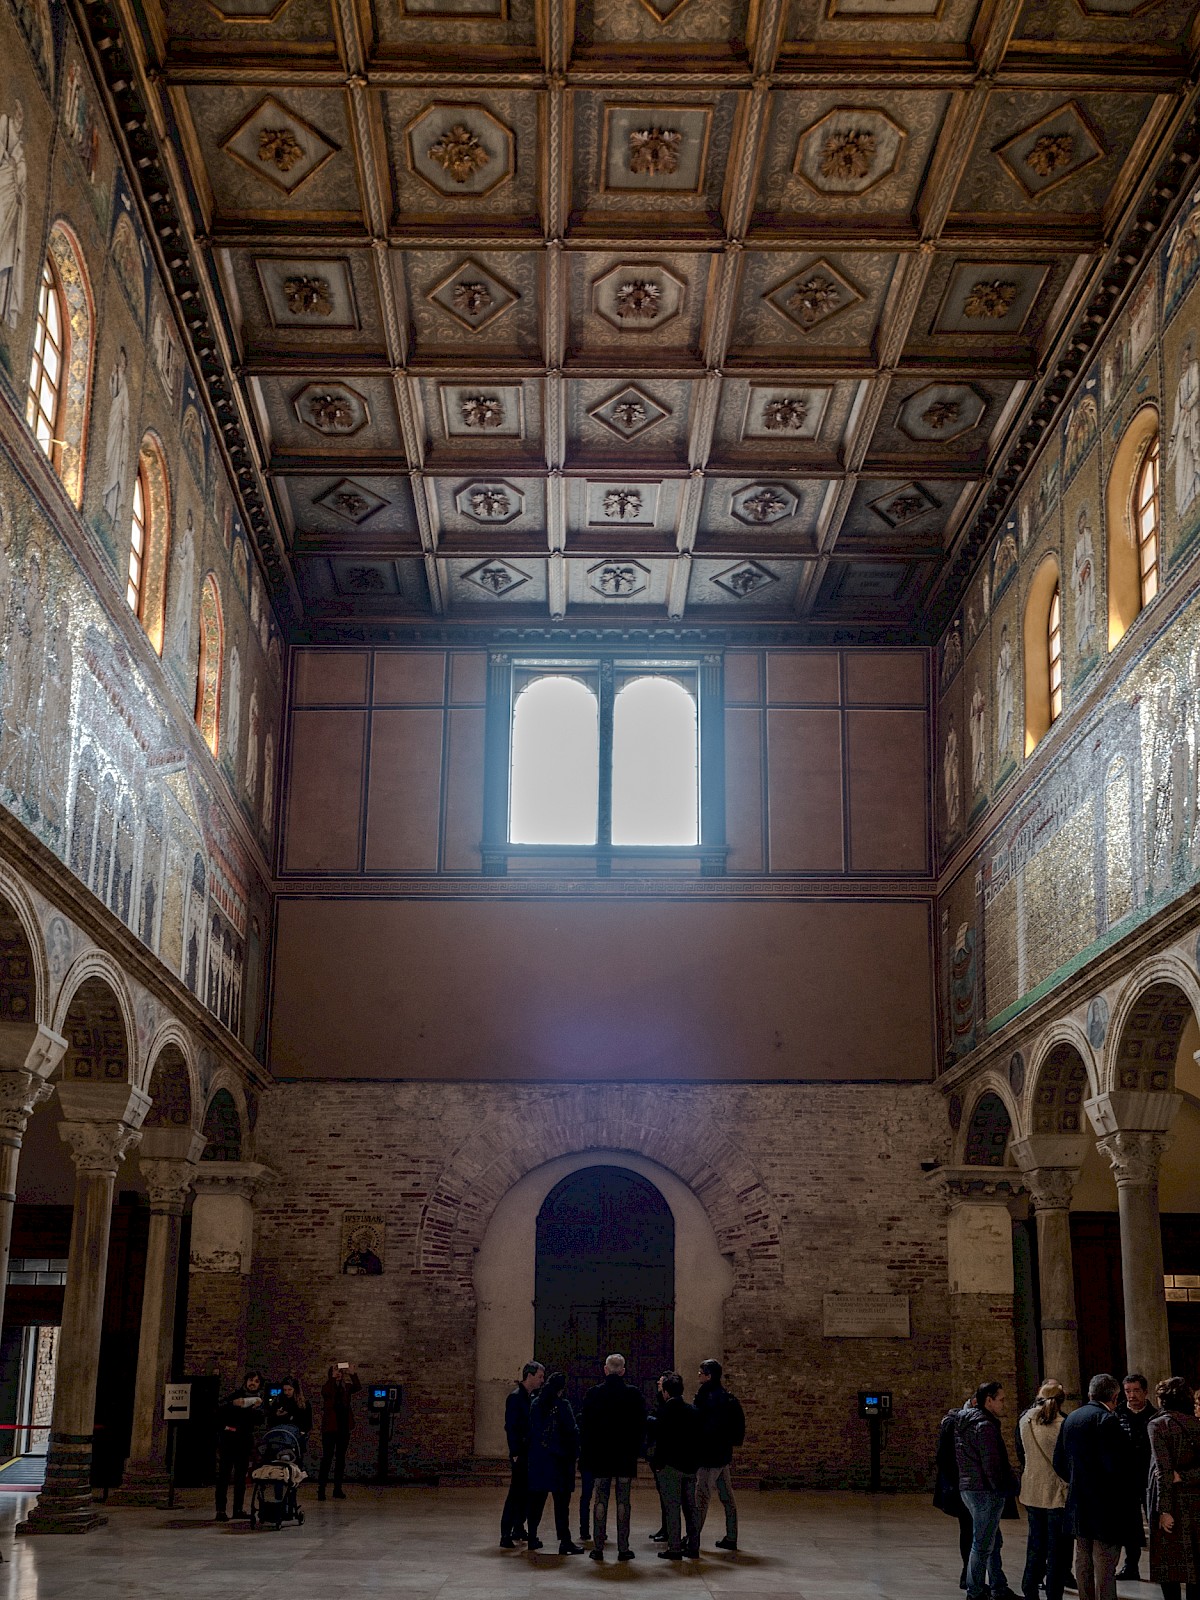 Basilica of Sant'Apollinare Nuovo, additional view